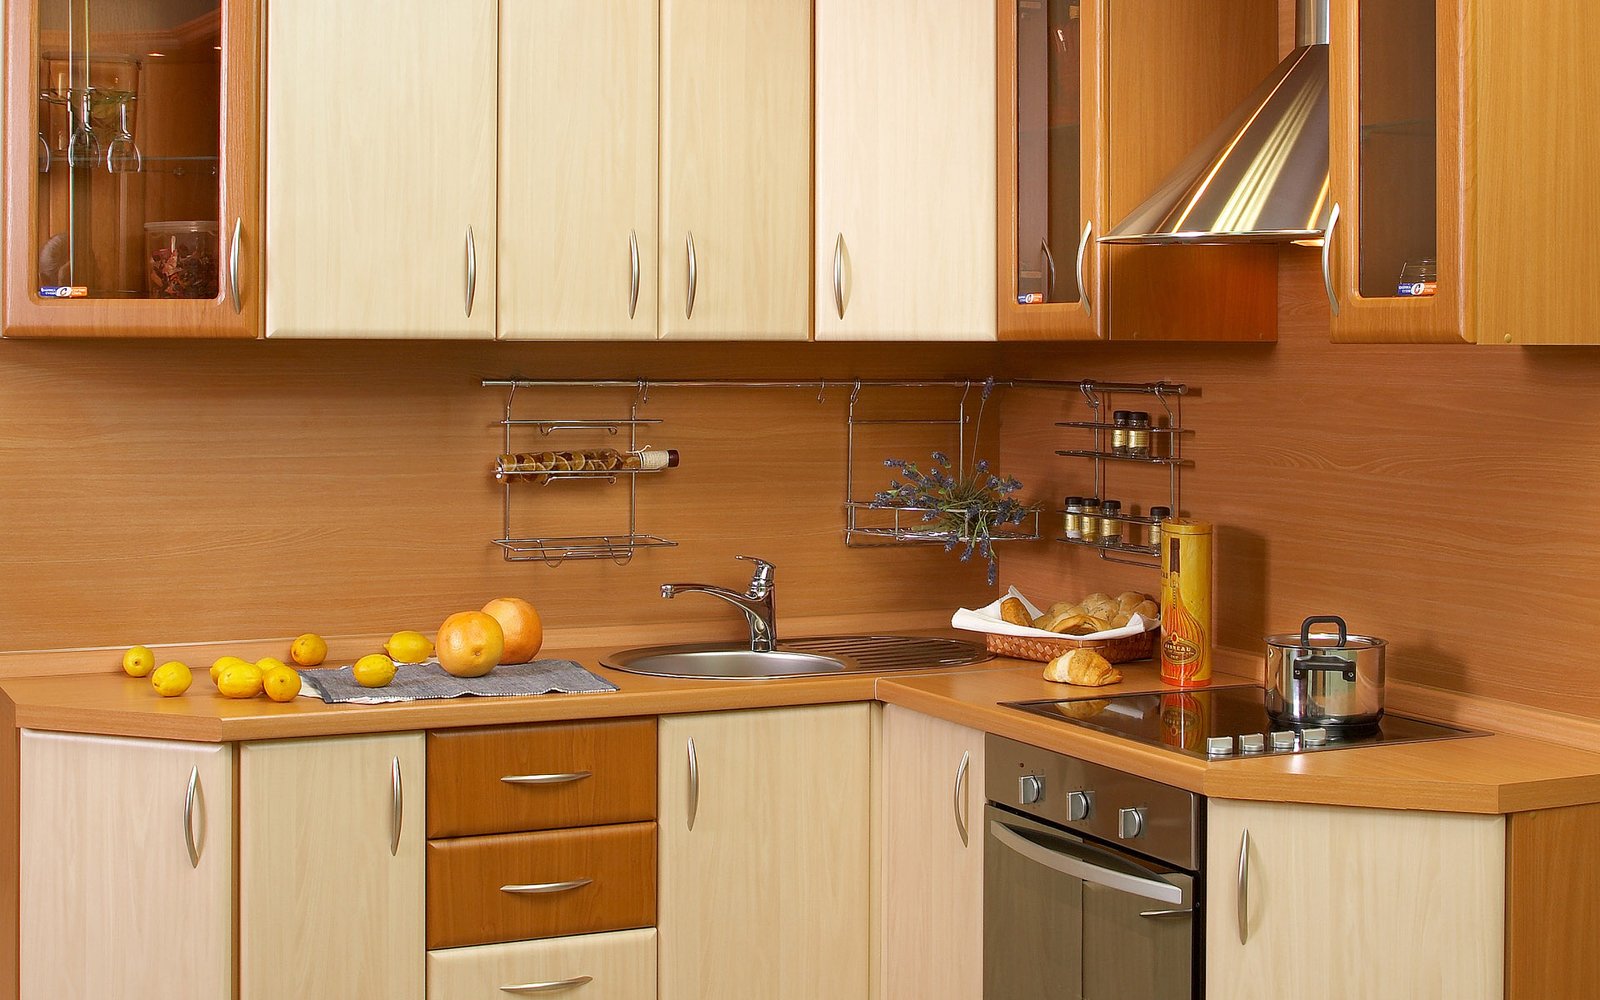 wooden-kitchen-cabinets-decor wooden kitchen cabinets decor